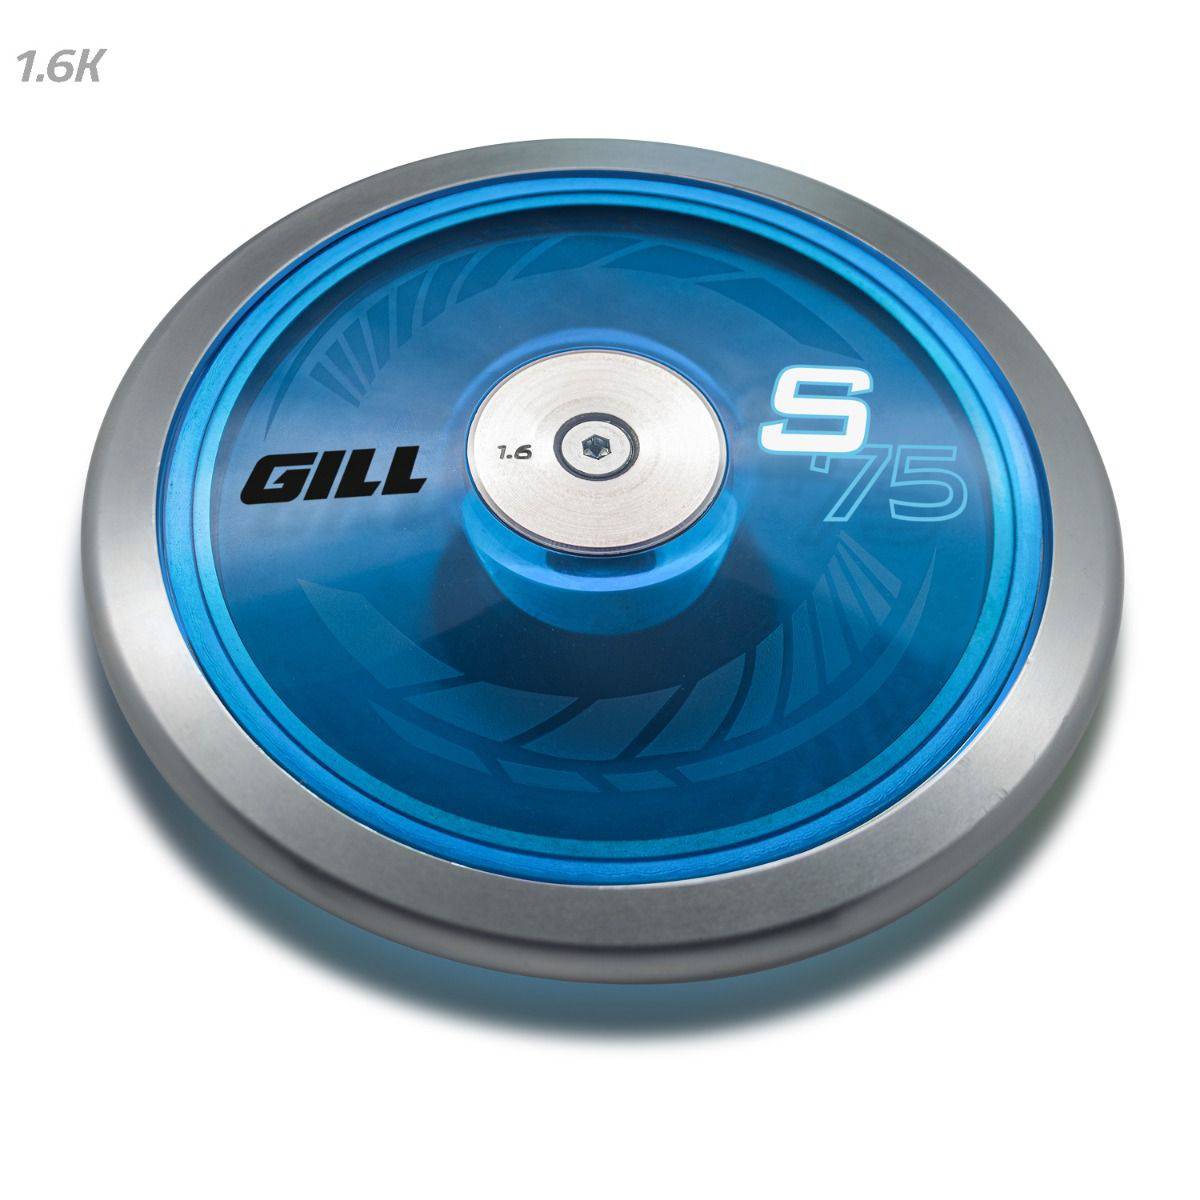 Gill Athletics 1.6K S75 Blue Discus